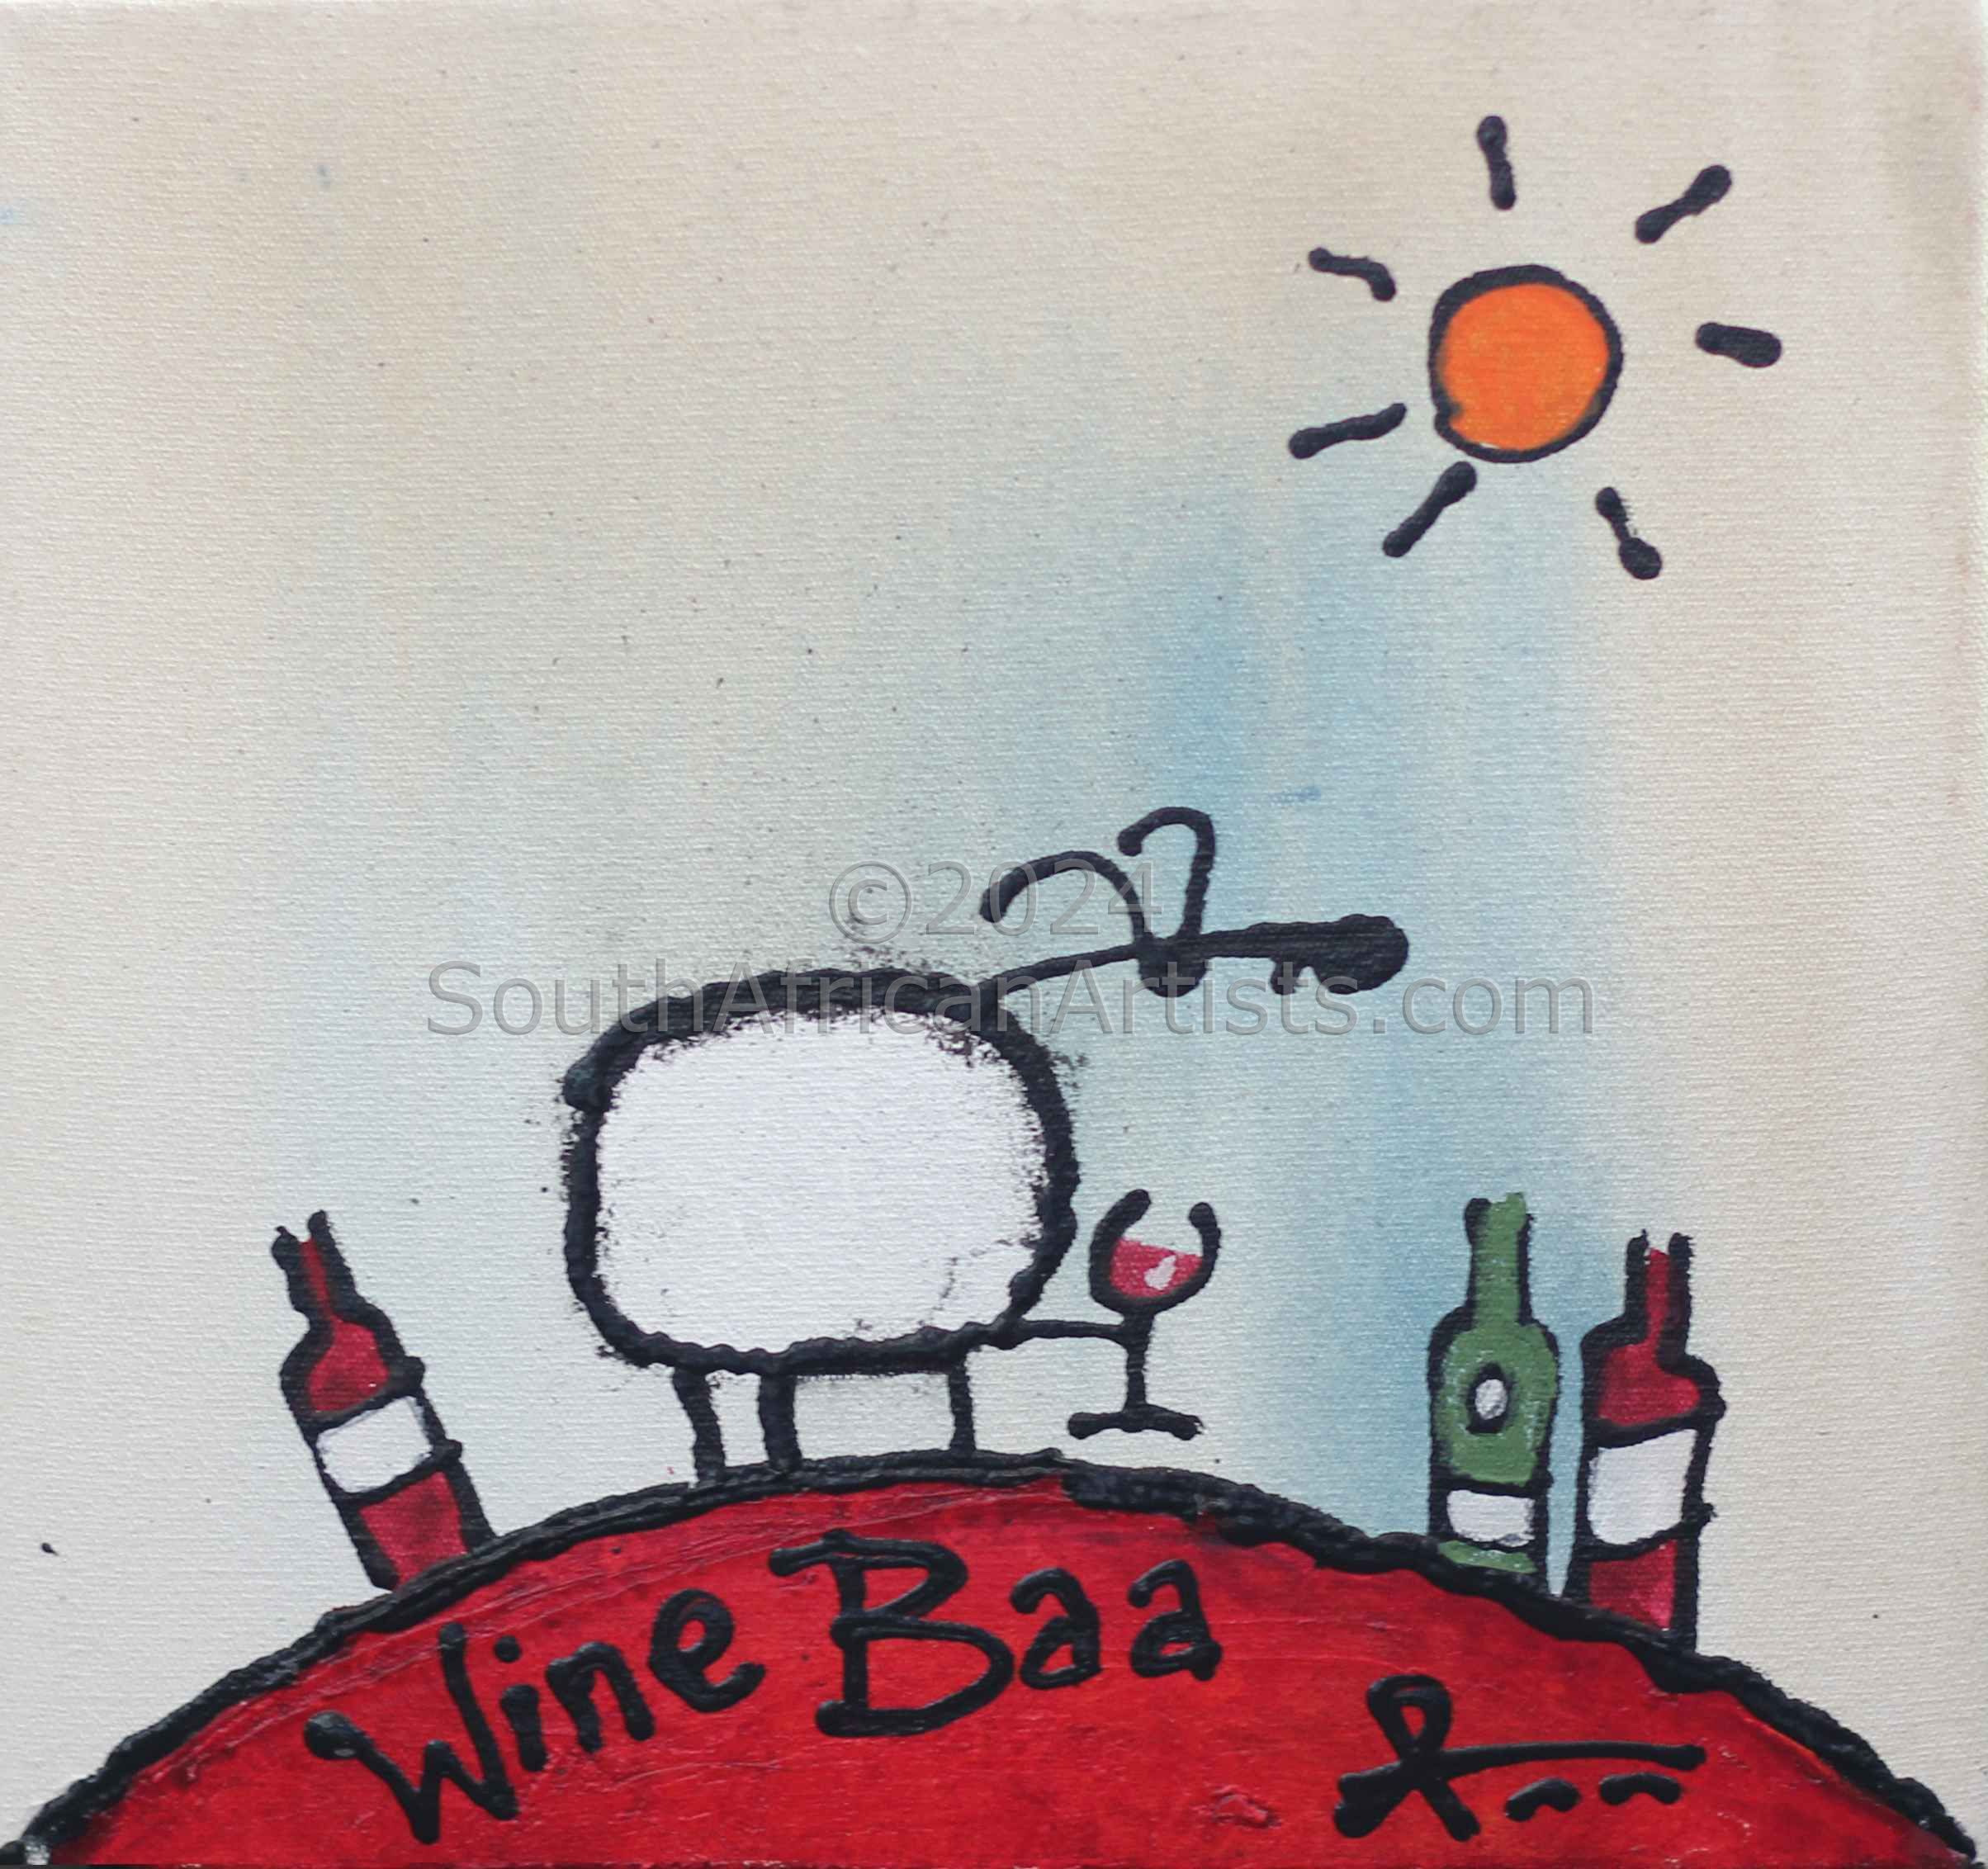 Wine Baa